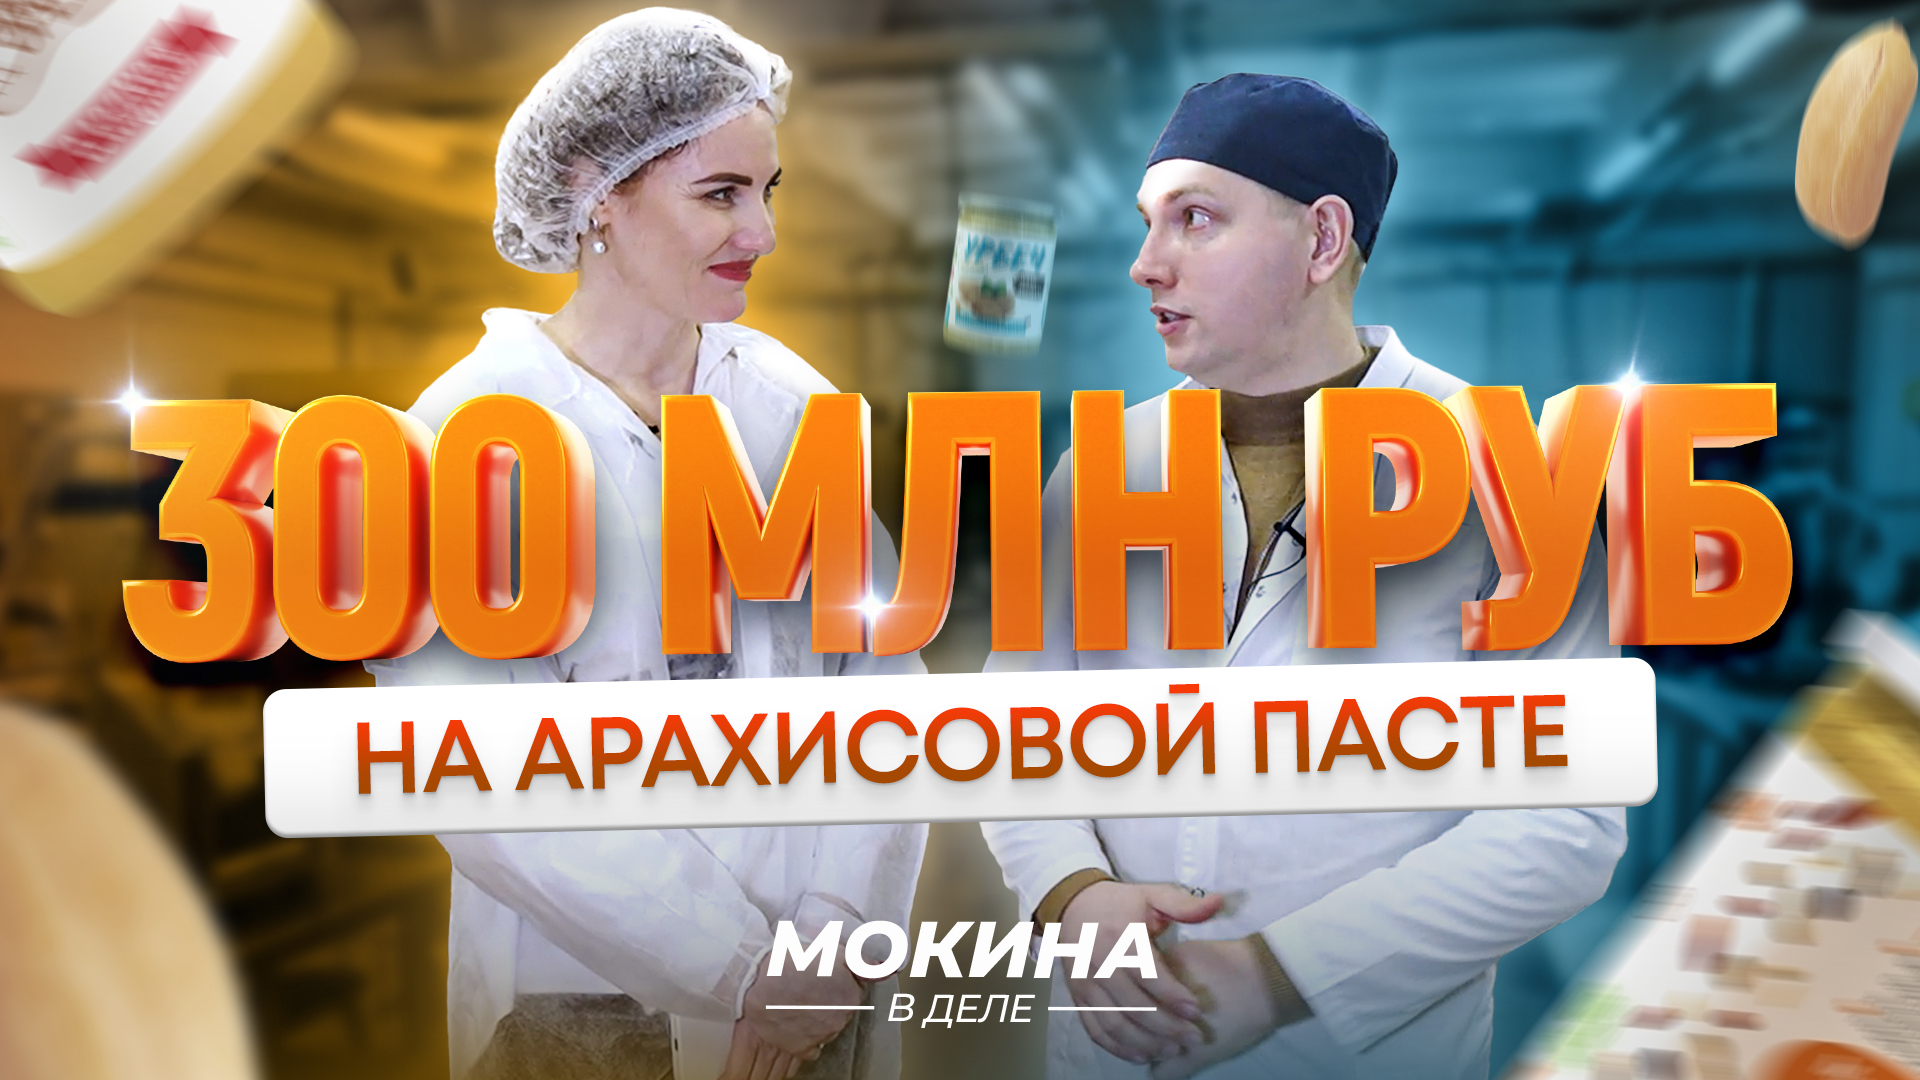 #Мокинавделе: 300 млн рублей на арахисовой пасте